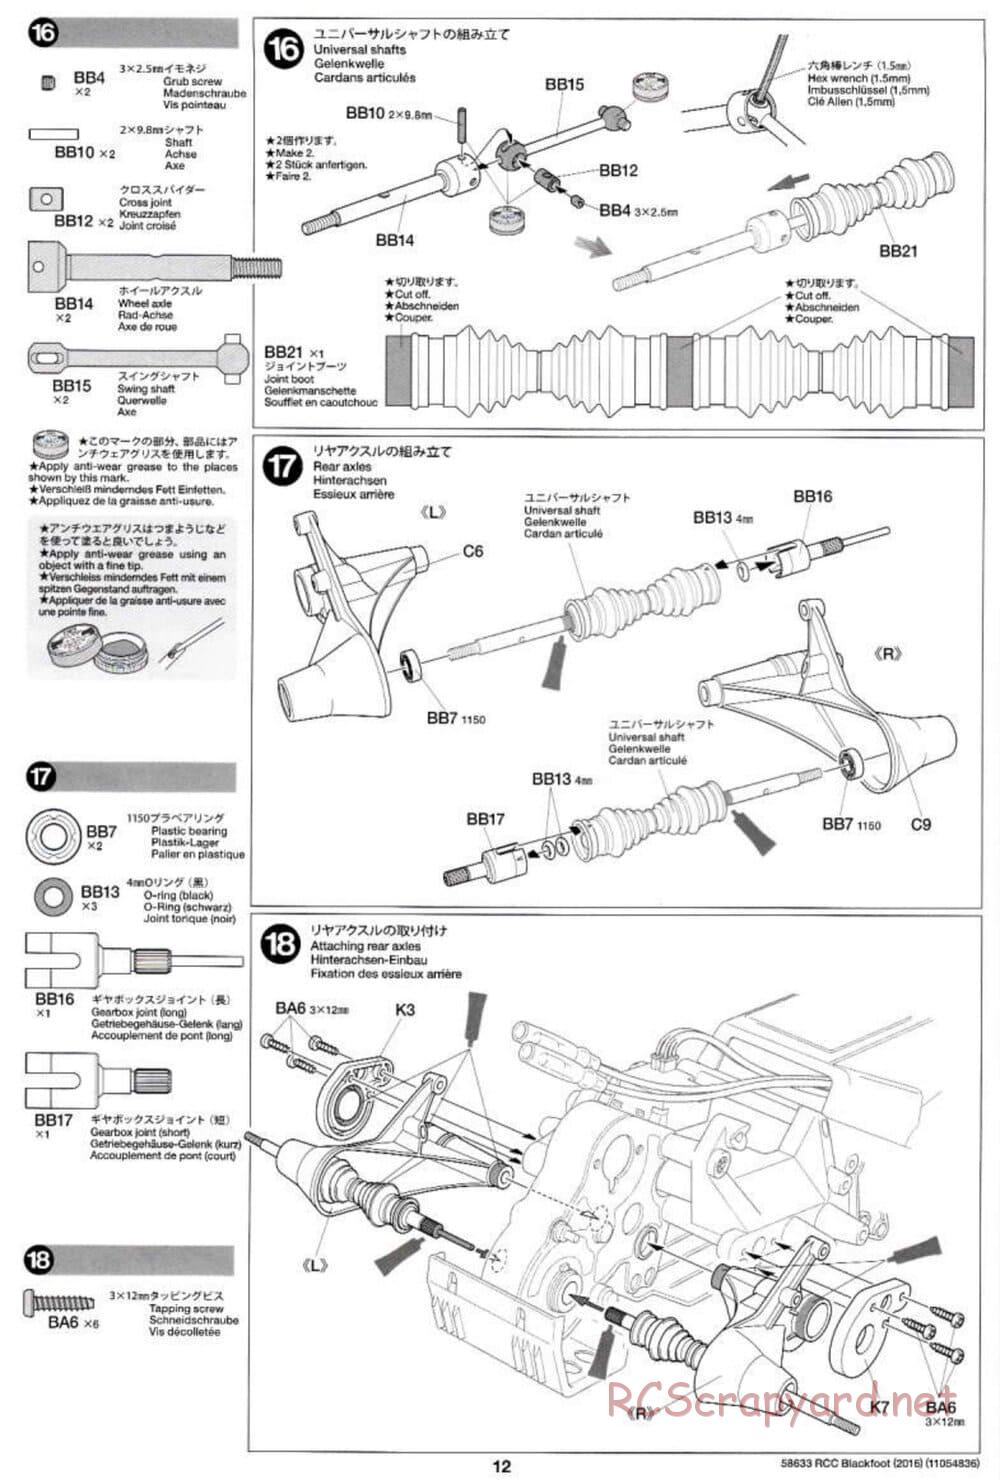 Tamiya - Blackfoot 2016 - ORV Chassis - Manual - Page 12